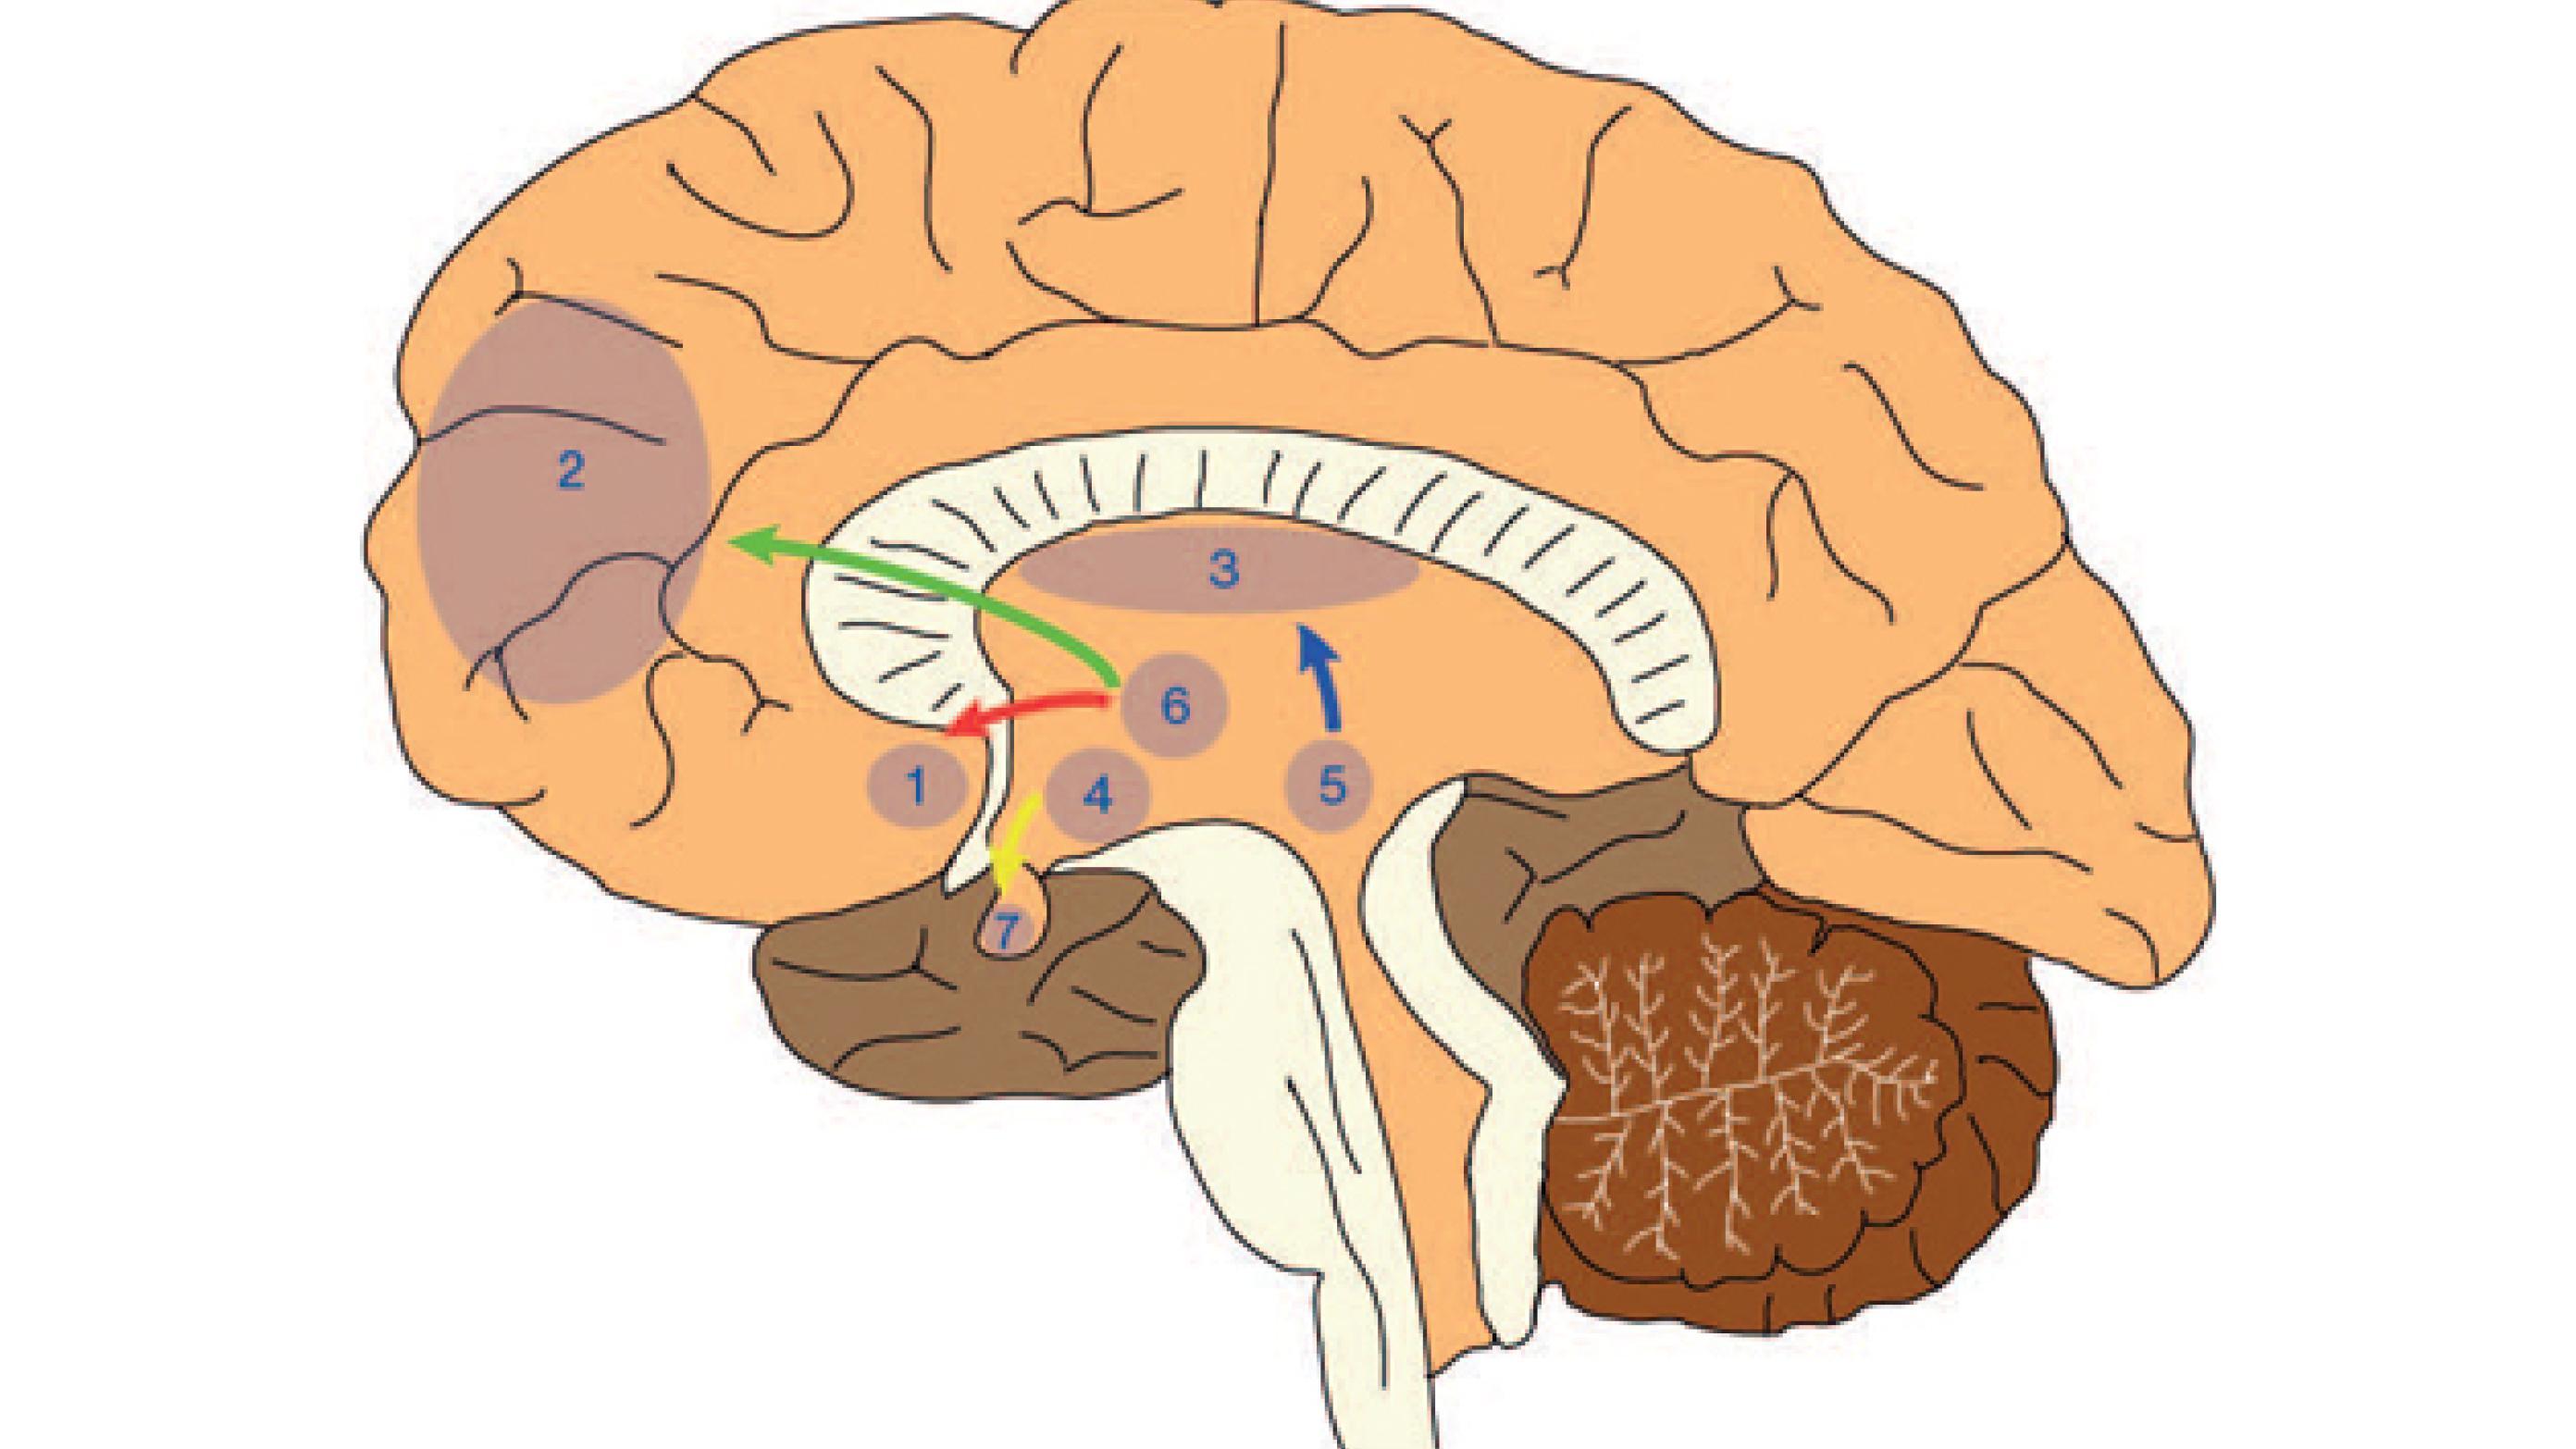 Dopaminerge nervebaner i den menneskelige hjerne (Fra [1] - Gengivet med tilladelse af Dansk Selskab for Klinisk Psykofarmakologi).